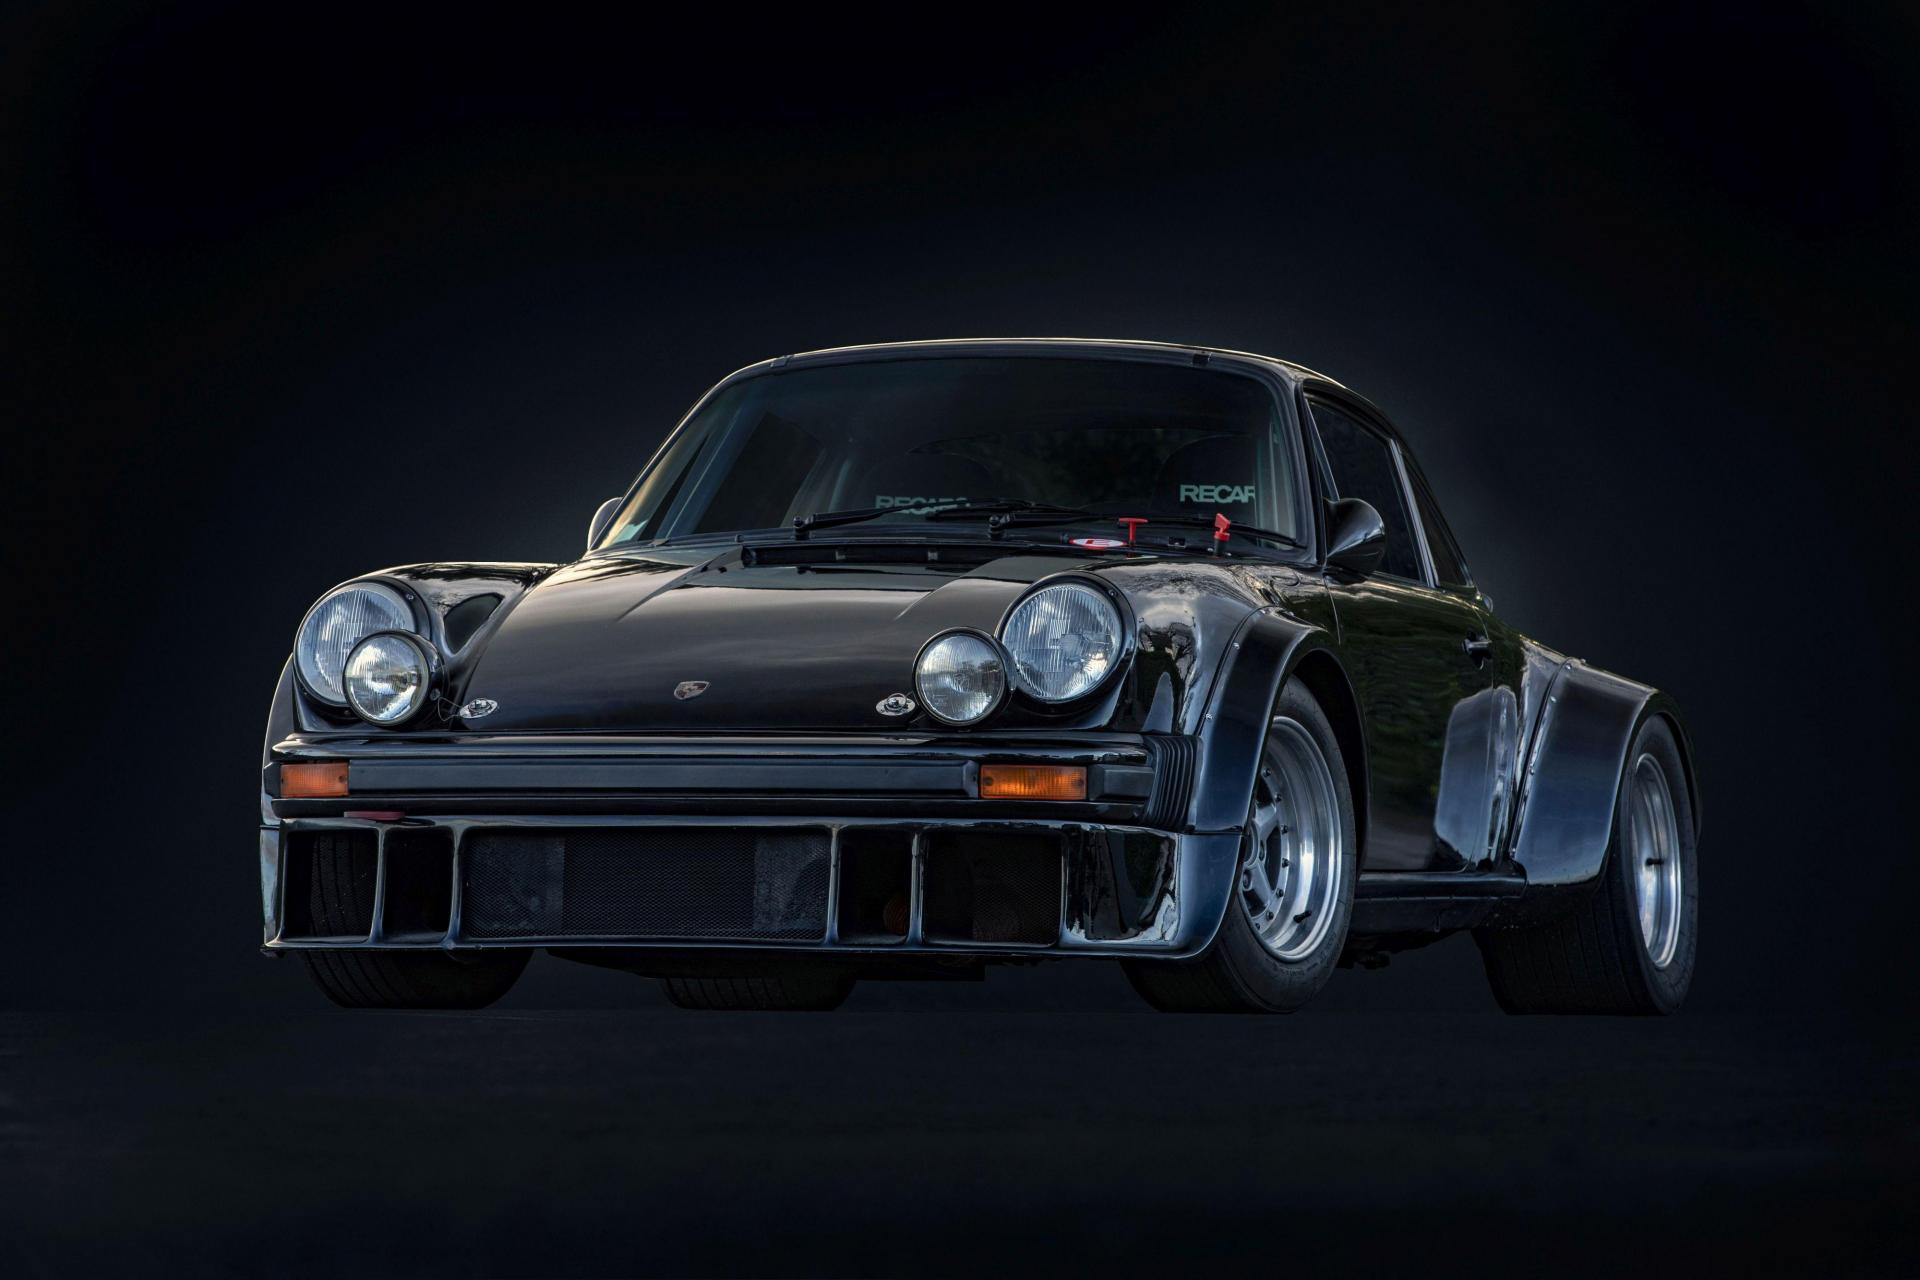 Le prix de la Porsche 911 SC de Johnny Hallyday vendue aux enchères